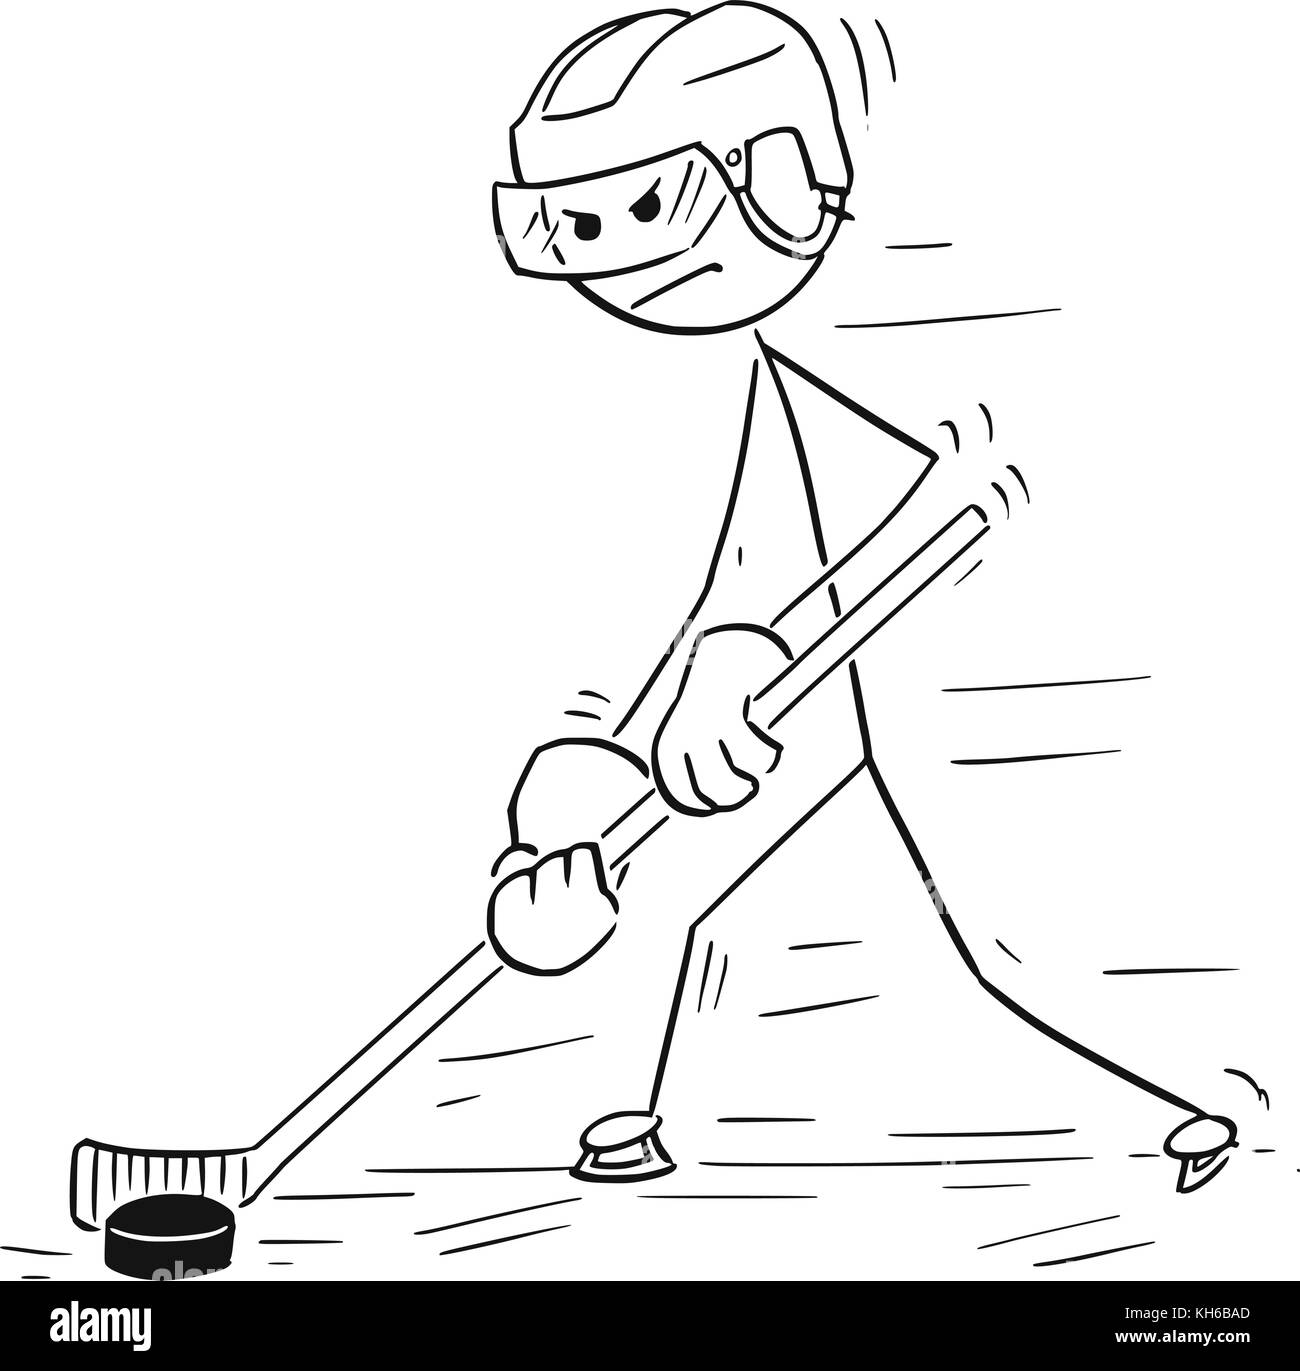 Cartoon stick man dessin illustration de manipulation), joueur de hockey sur glace et le patinage avant. rondelle Illustration de Vecteur